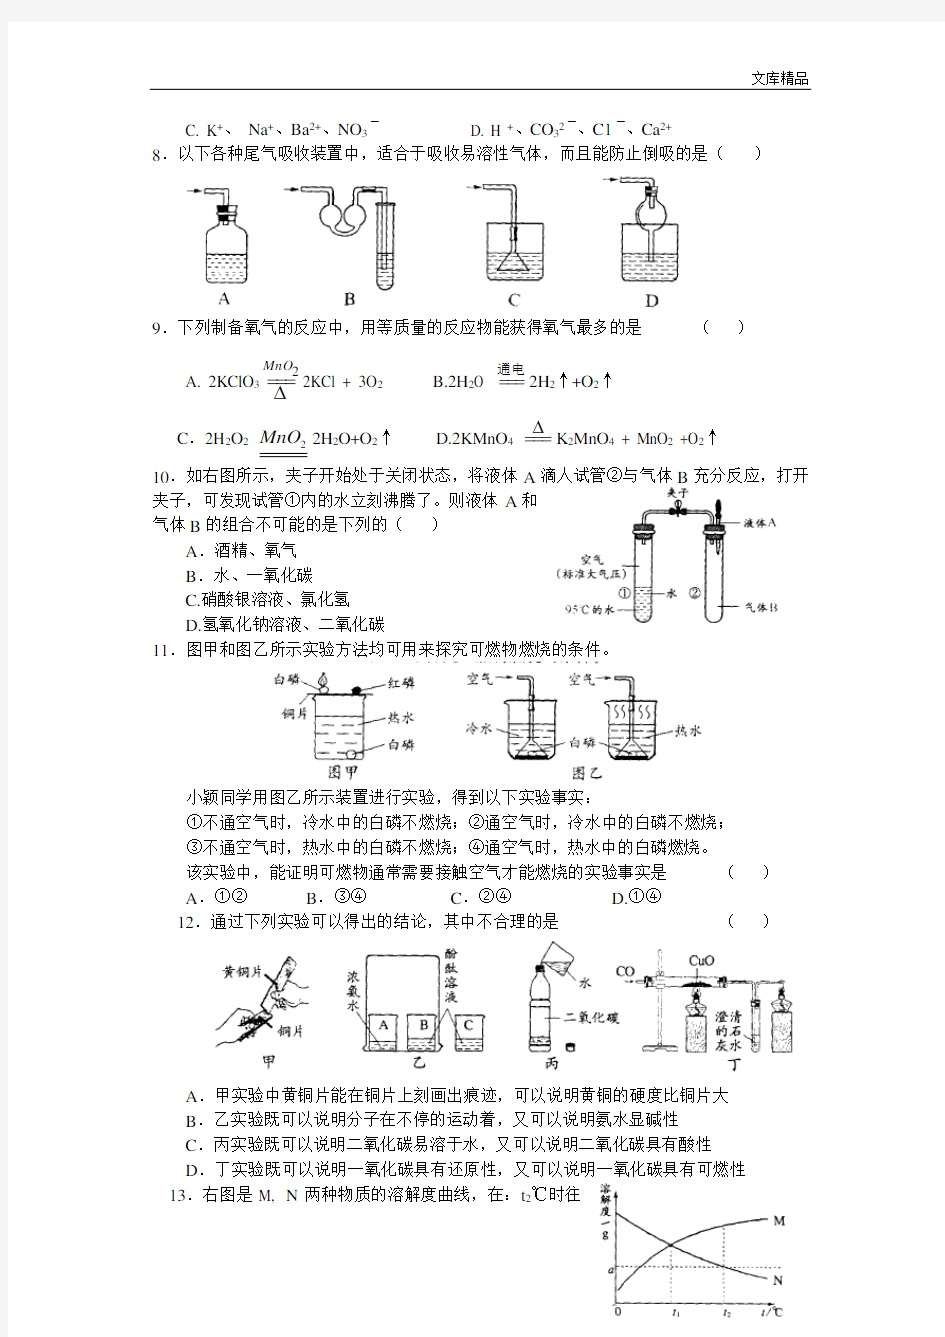 2007年江苏省初中学生化学素质和实验能力竞赛初赛试题